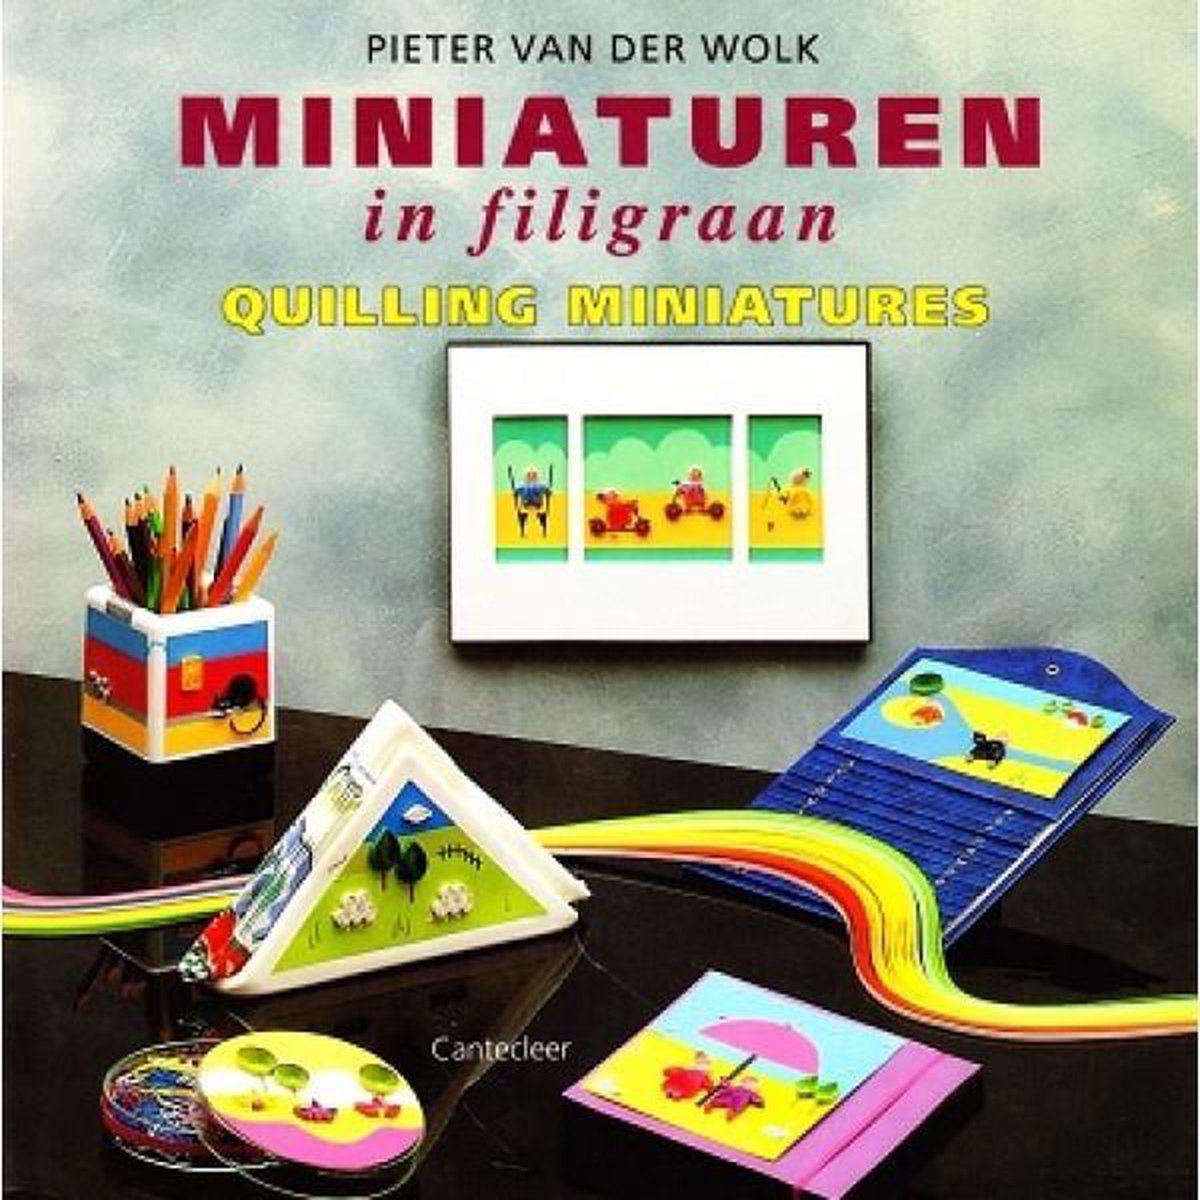 Miniaturen in filigraan, Quilling miniatures